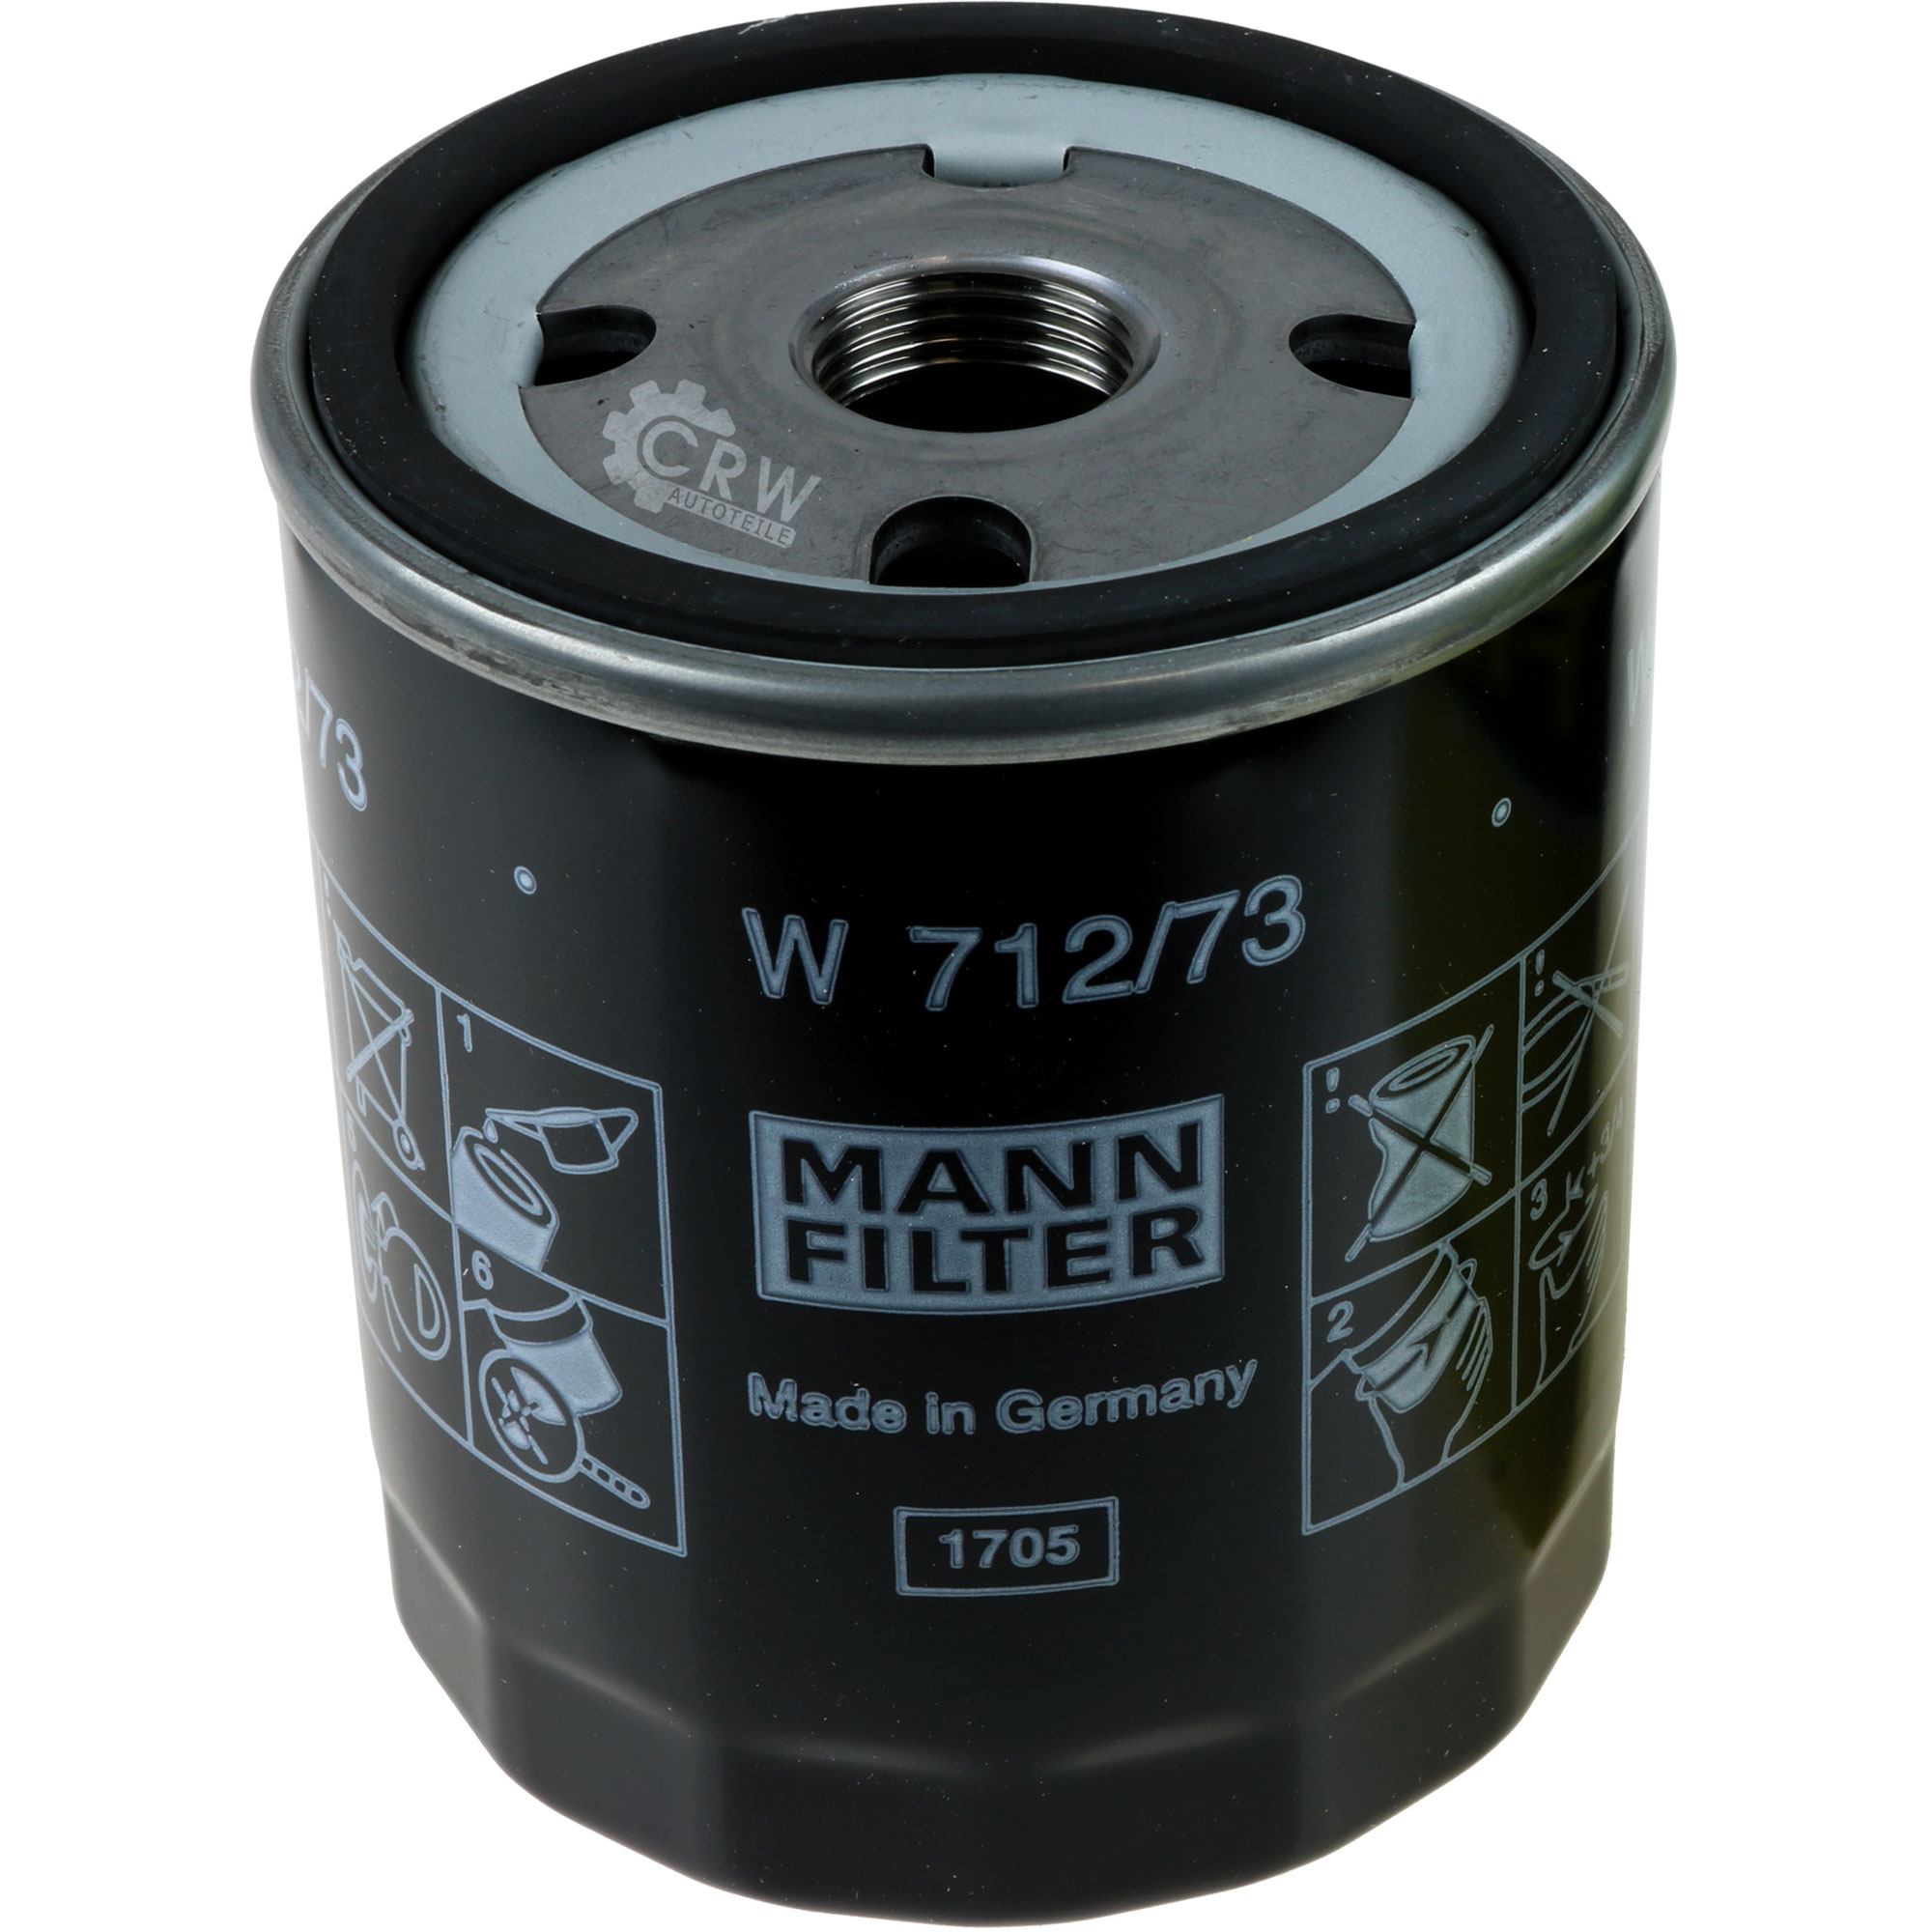 MANN-FILTER Ölfilter W 712/73 Oil Filter